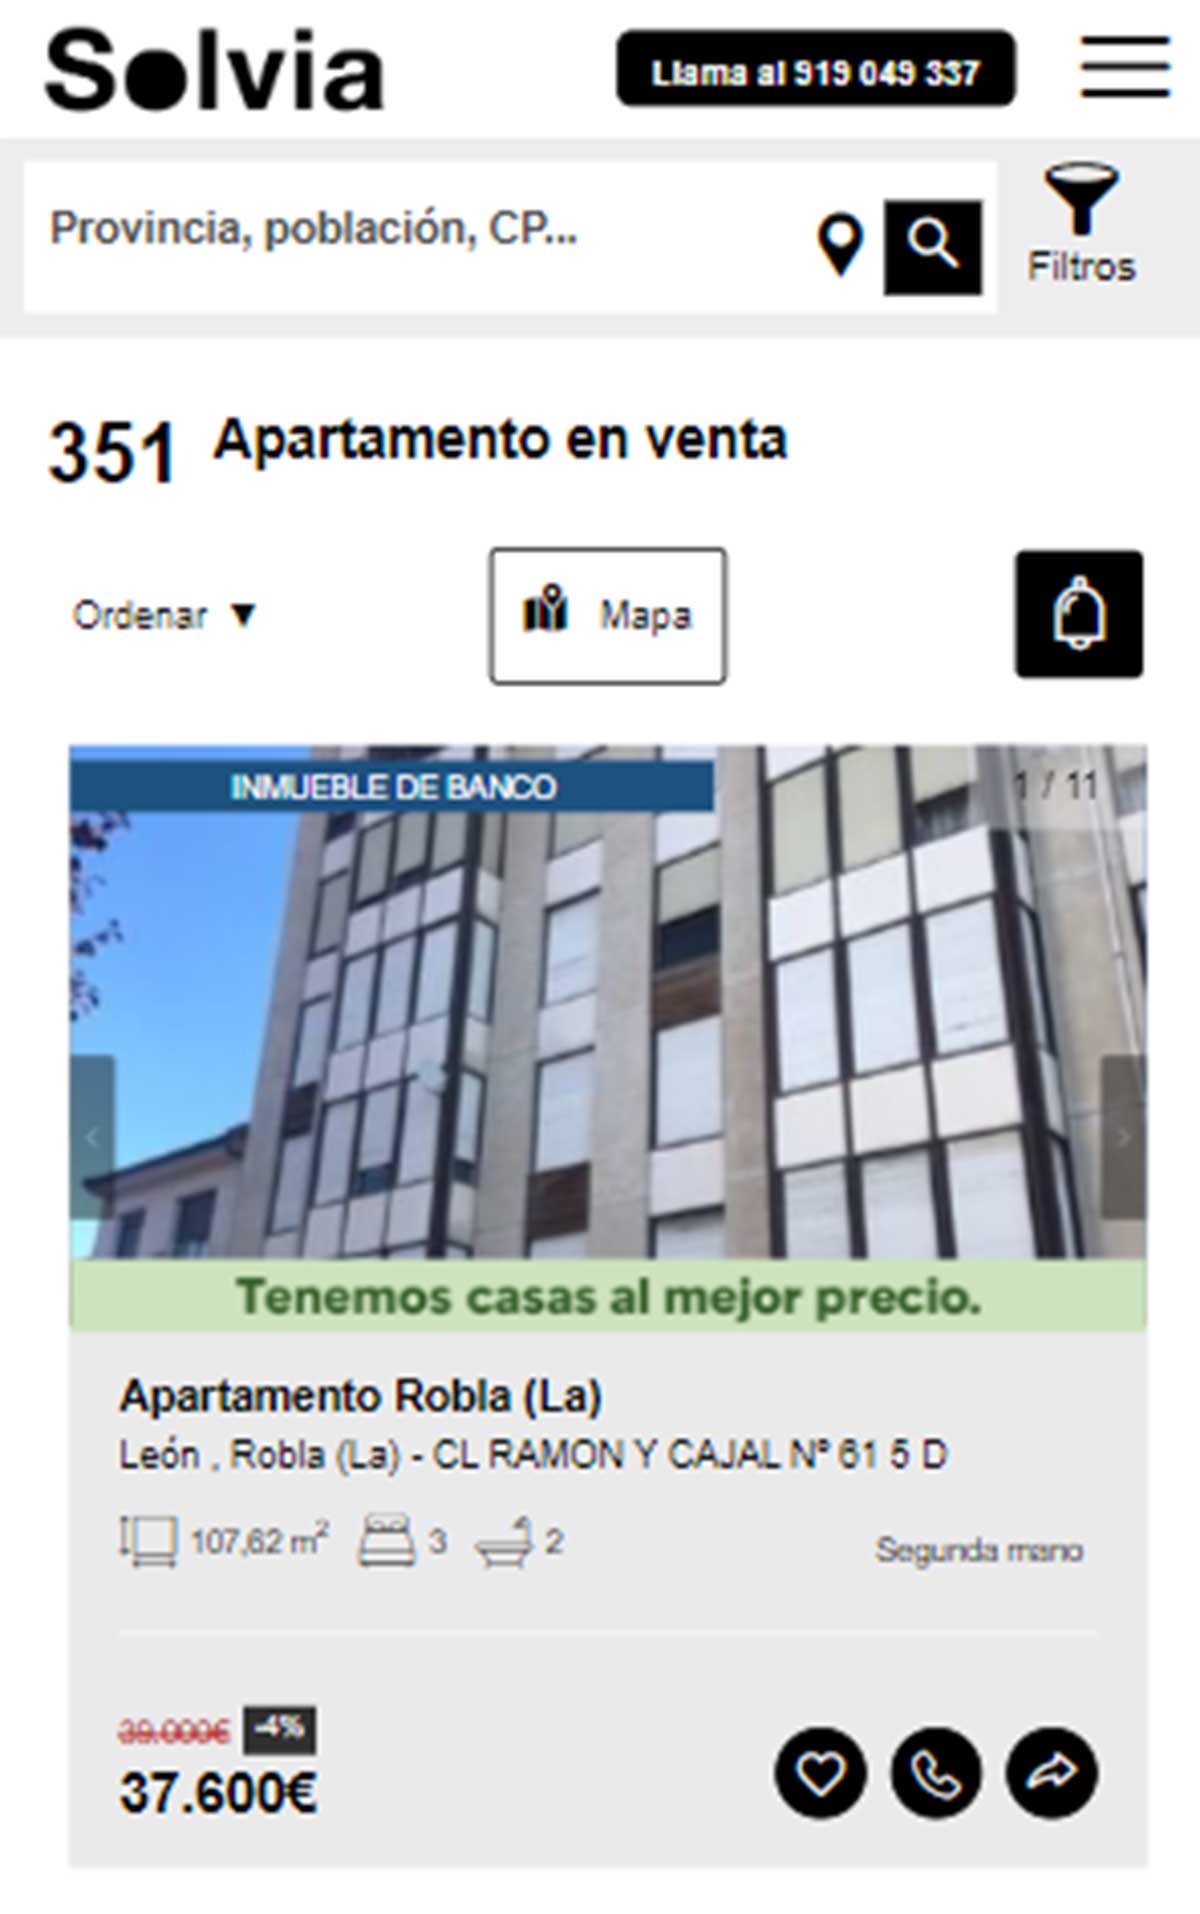 Apartamento a la venta por 37.000 euros